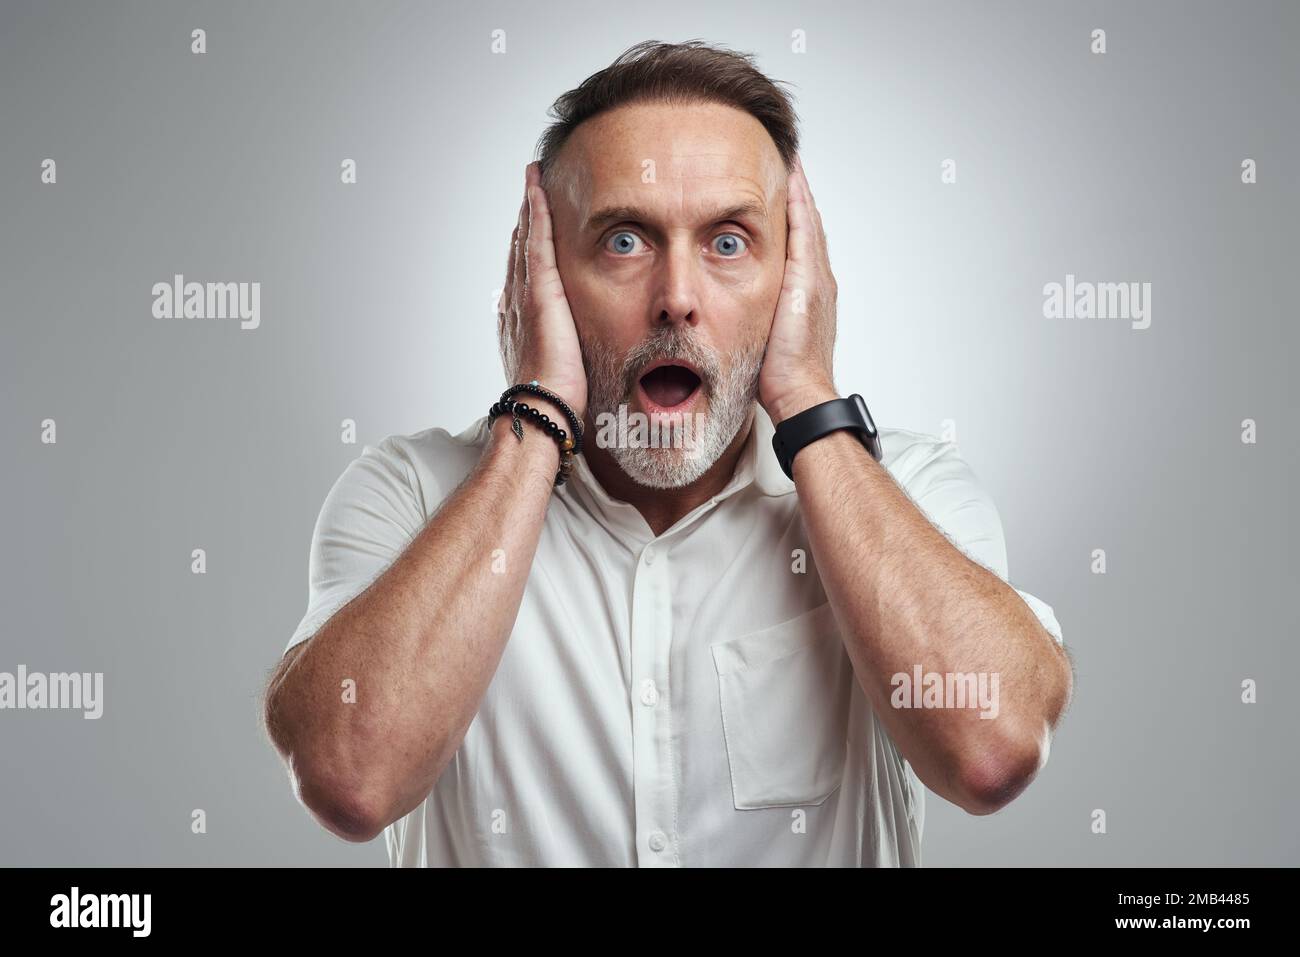 Ich will es nicht hören. Studioporträt eines erwachsenen Mannes, der sich die Ohren zudeckt und vor grauem Hintergrund schockiert aussieht. Stockfoto